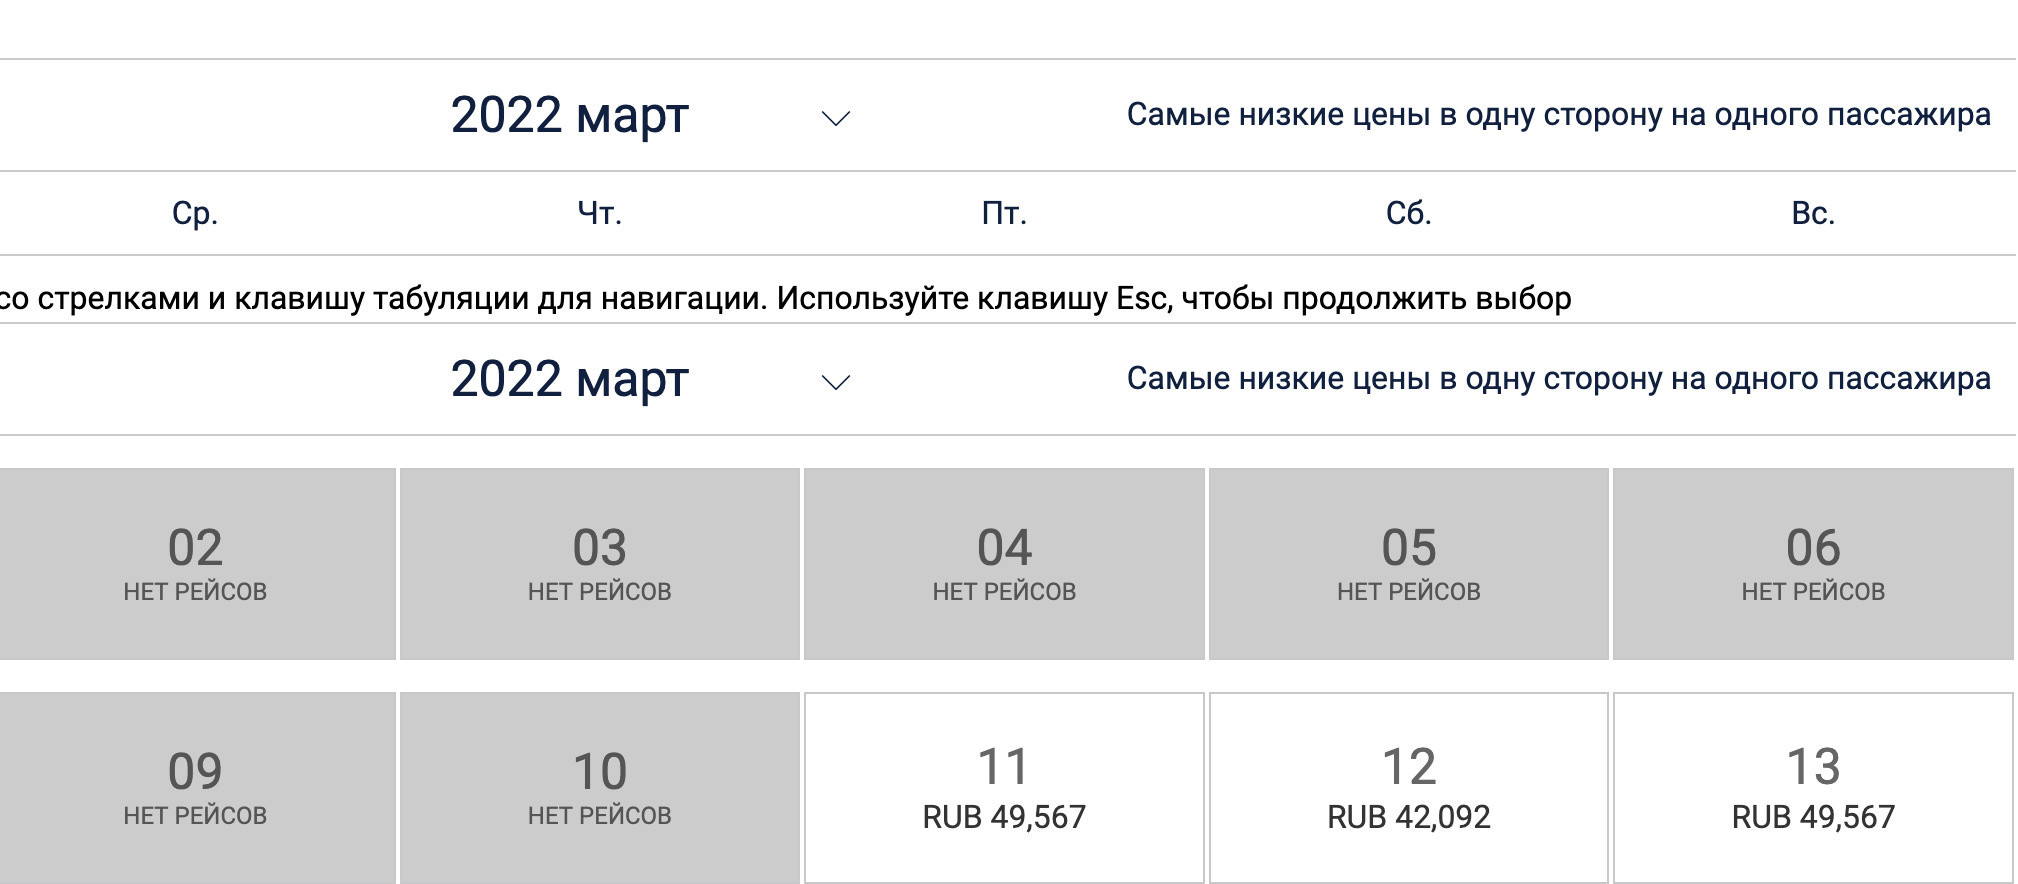 Билеты в Стамбул из Москвы компании Air Serbia. На ближайшие даты билетов нет, на 11 марта билет стоит почти 50 тысяч рублей